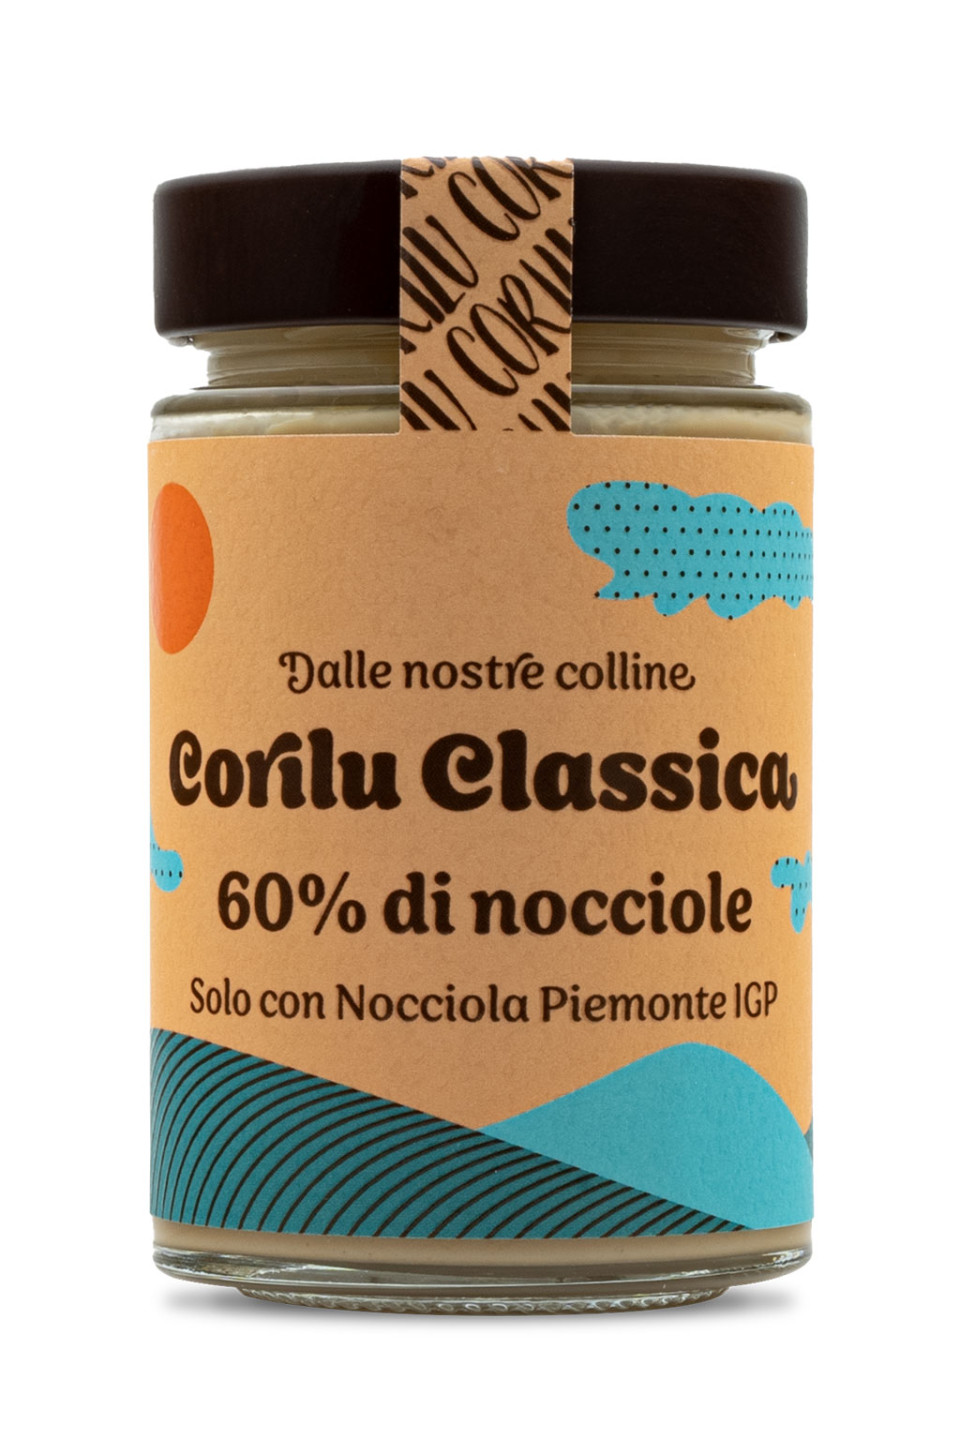 Crema Nocciola Classica Corilu_MAIN.jpg